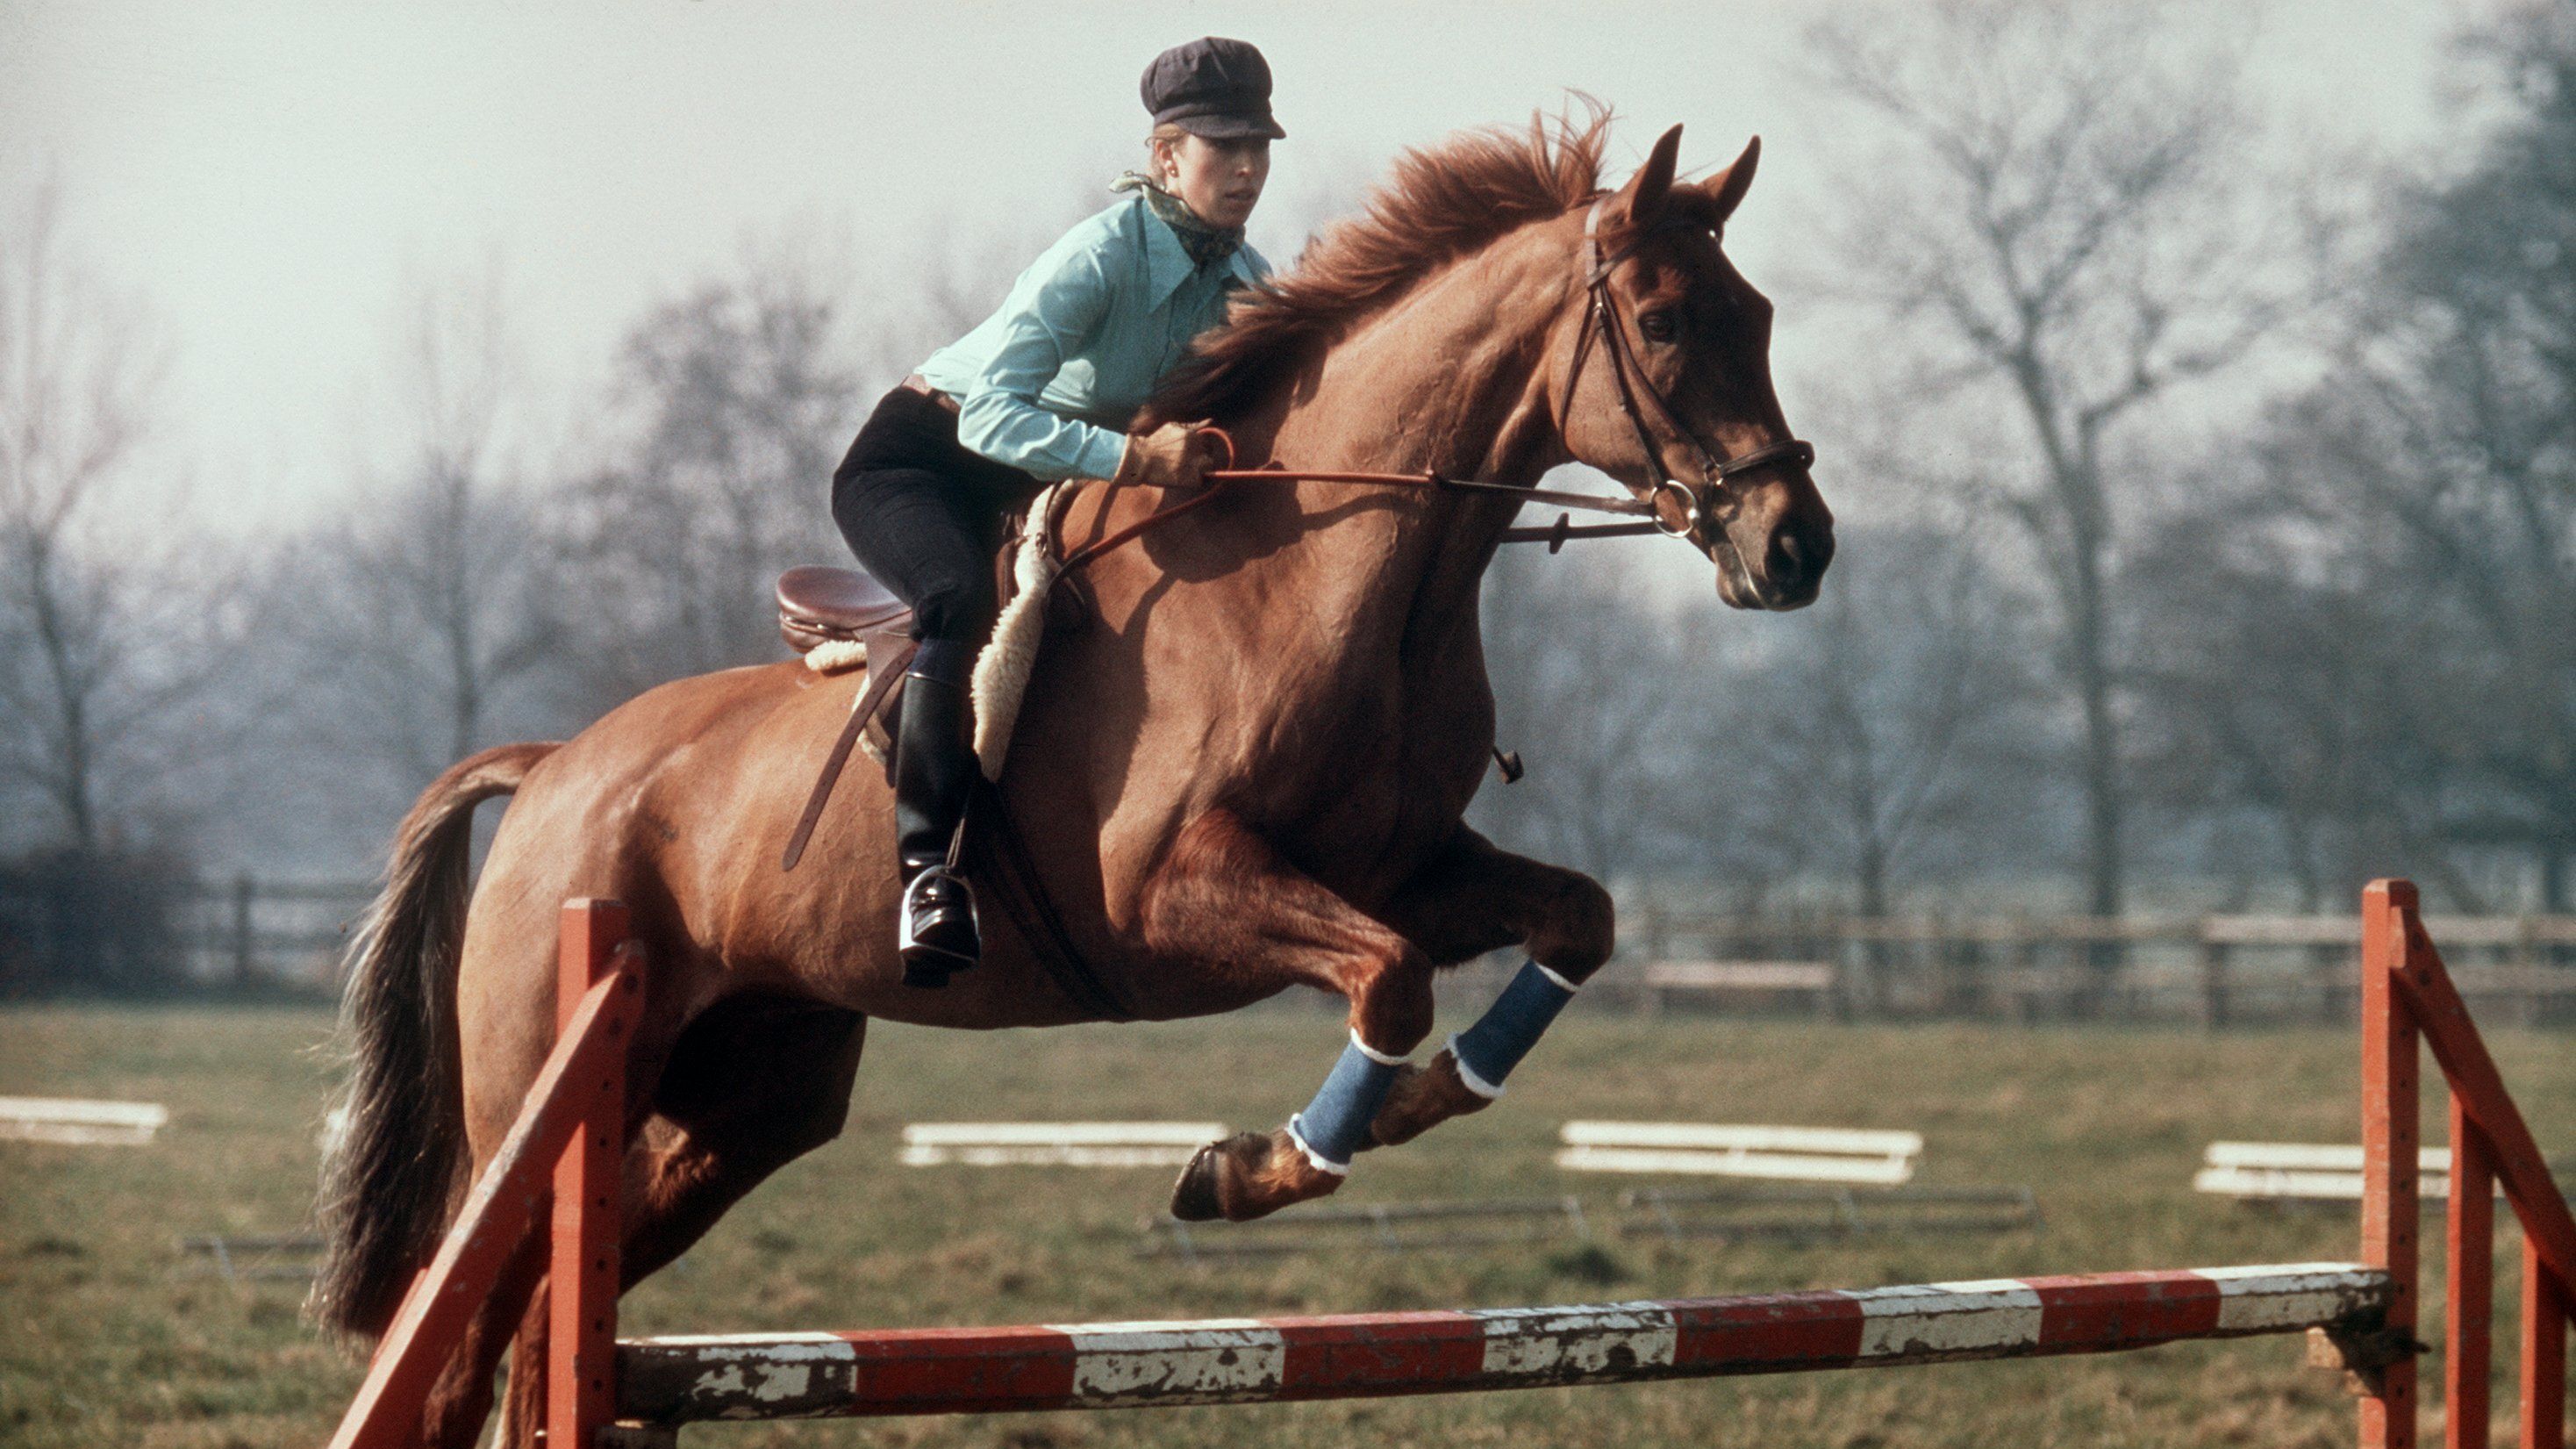 Auf ihrem Pferd "Doublet" überspringt die britische Prinzessin Anne 1976 beim Military-Training ein Hindernis. Viele Jahre machte die Prinzessin als brilliante Reiterin auf sich aufmerksam. 1971 wurde sie in Burgley Europameisterin im Military-Reiten, der gefährlichsten Disziplin des Pferdesports. 1976 nahm sie an der Olympischen Military in Montreal teil und belegte nach einem Sturz den 24. Platz. An ihrem 40. Geburtstag zieht sich Anne vom aktiven Pferdesport zurück.